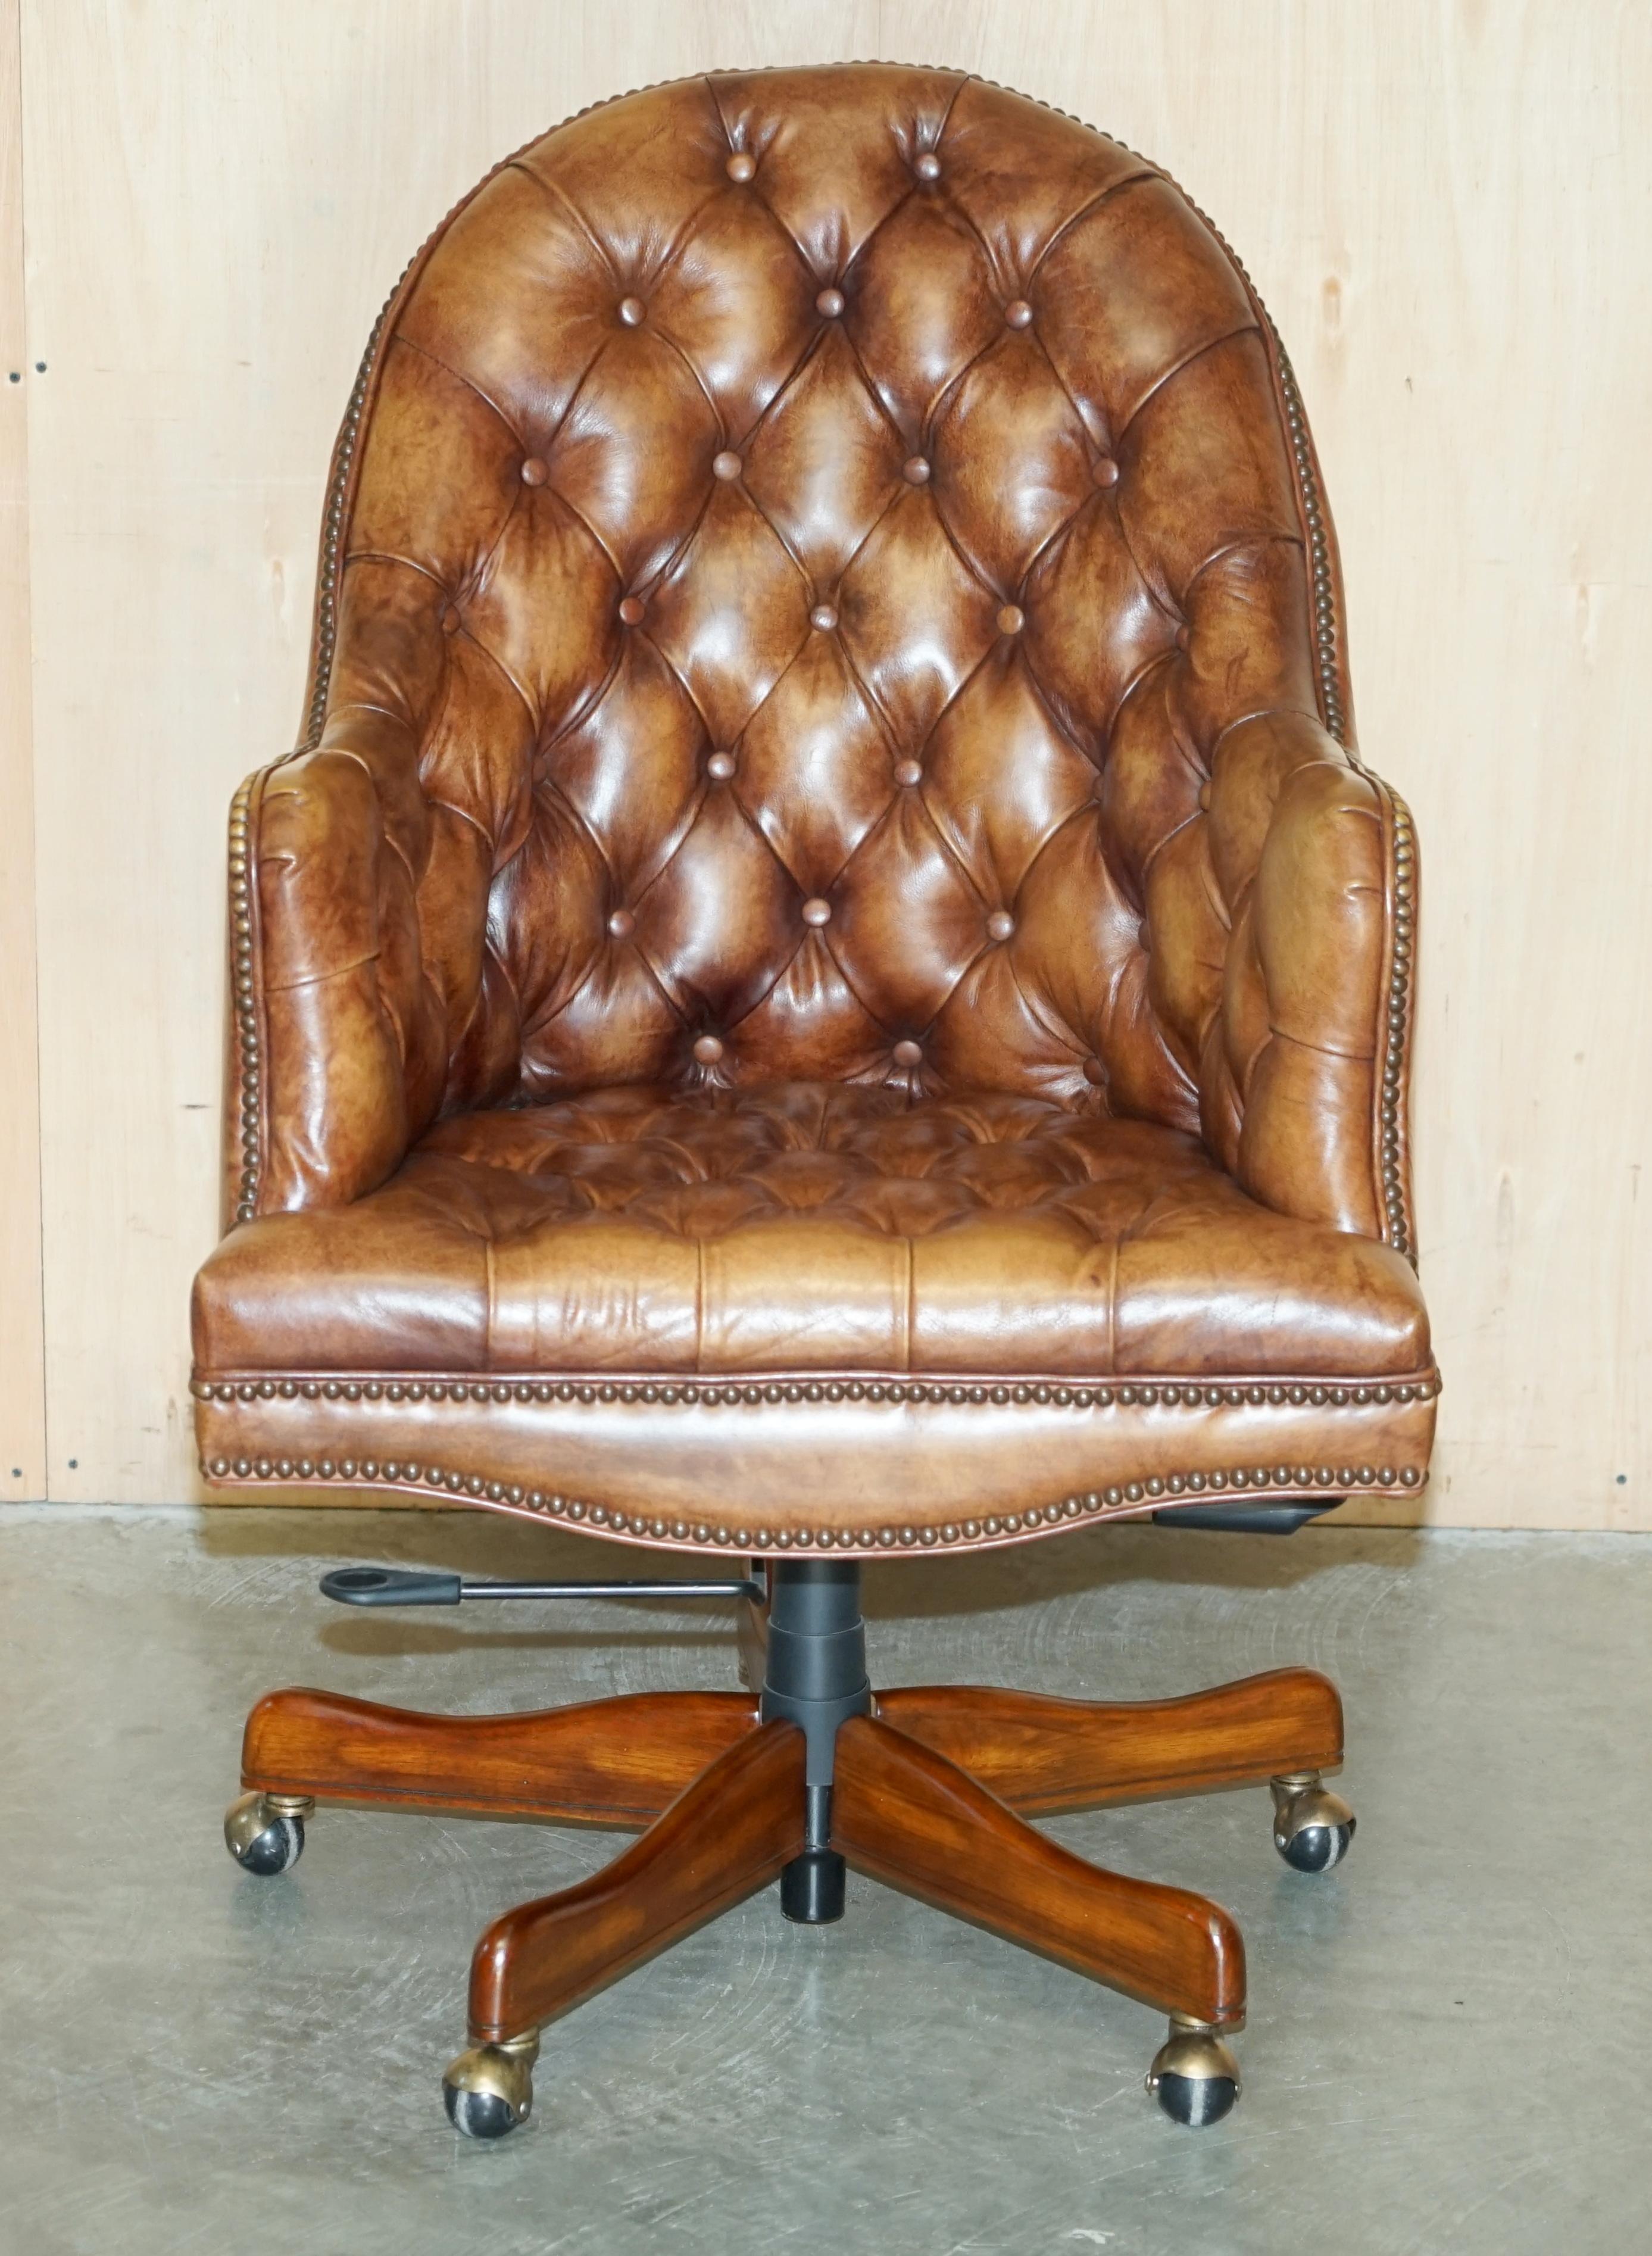 Royal House Antiques

The House Antiques a le plaisir d'offrir à la vente cette superbe chaise de bureau Chesterfield en cuir teint à la main, de couleur marron vieilli, fabriquée à la main en Angleterre. 

Veuillez noter que les frais de livraison